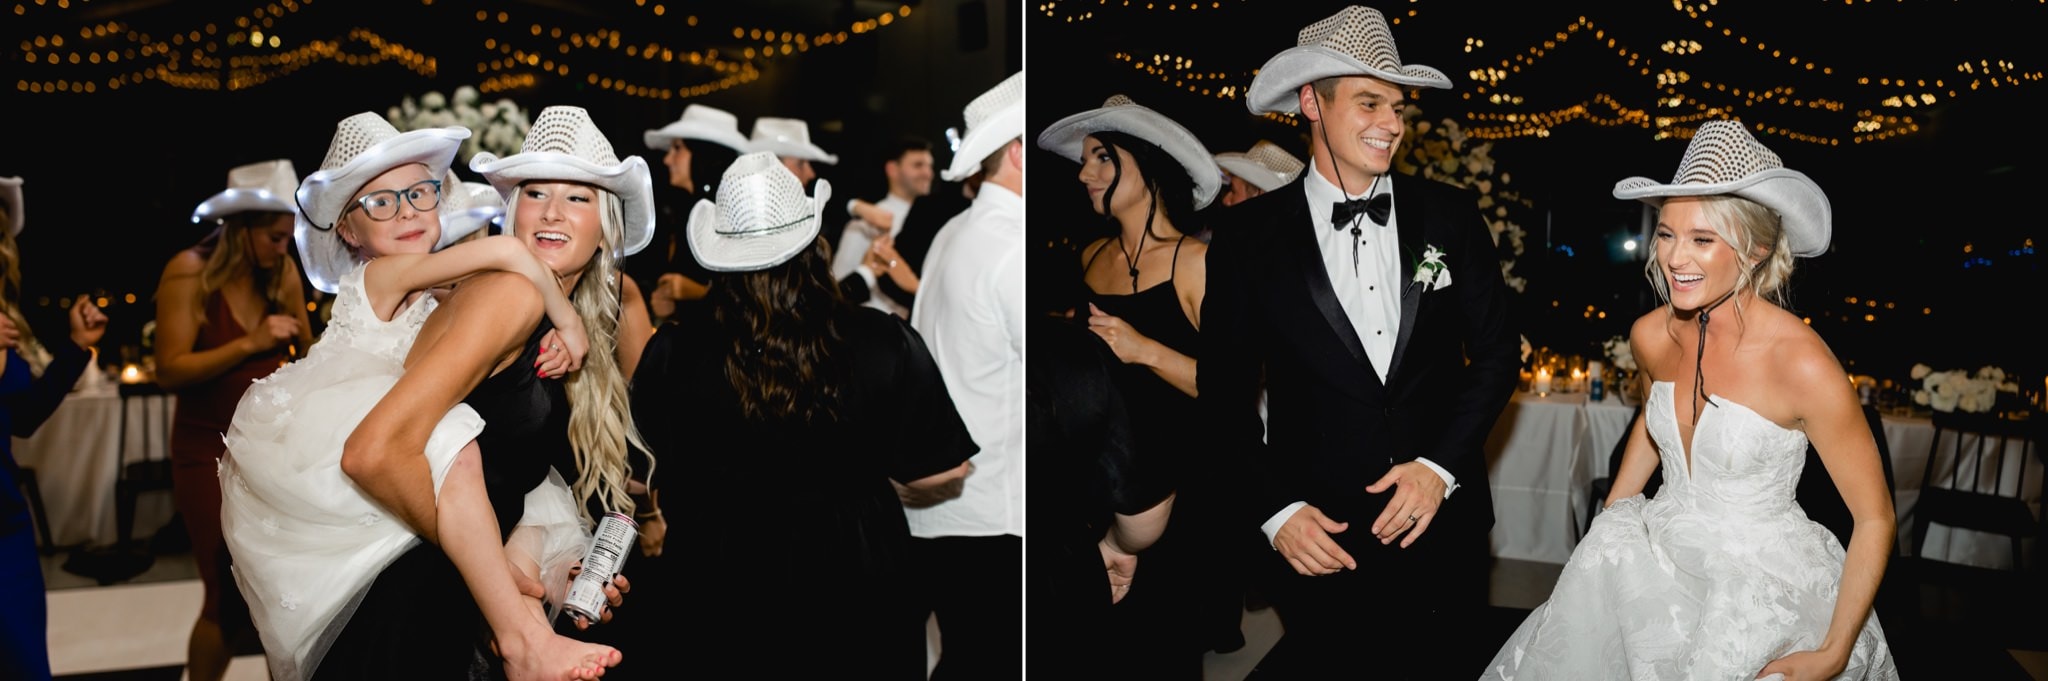 bride and groom cowboy hat photos